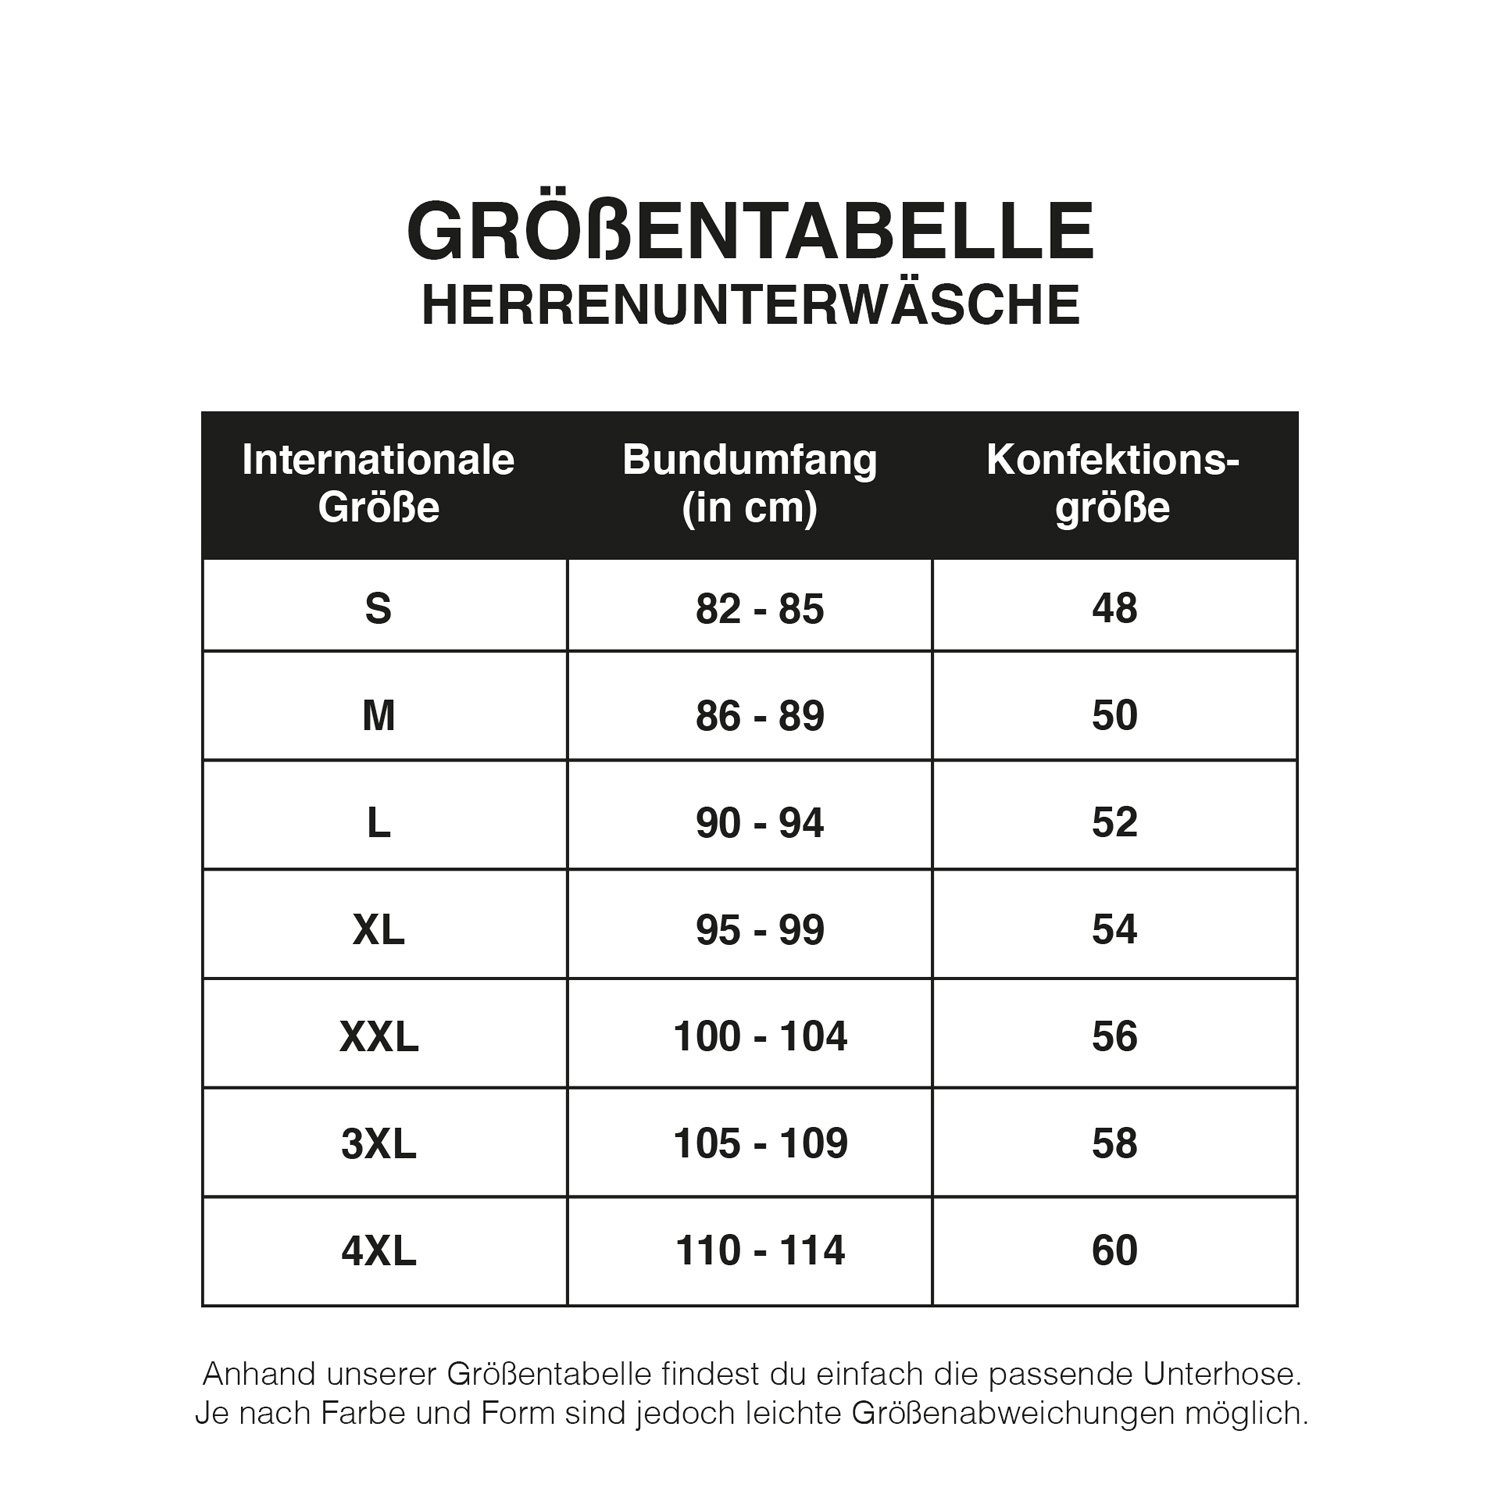 JARAQ Boxer JARAQ Baumwolle Unterhosen Perfekte Passform (6-St) - 4XL Boxershorts 6er S Herren für Pack Hellgrau Männer